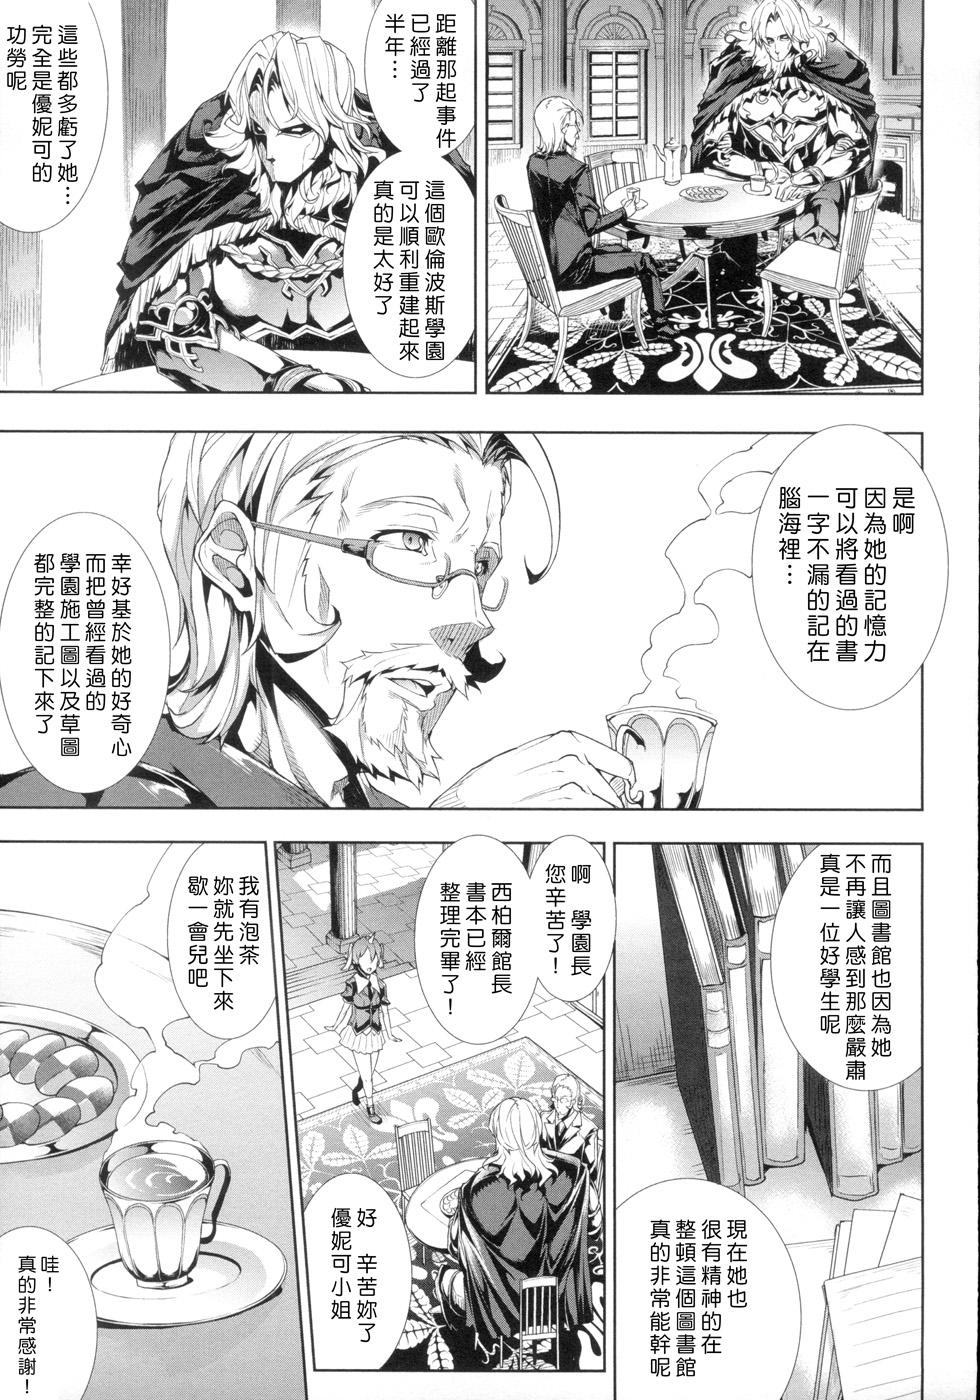 [Erect Sawaru] Shinkyoku no Grimoire -PANDRA saga 2nd story- Ch. 1-4 [Chinese] 5